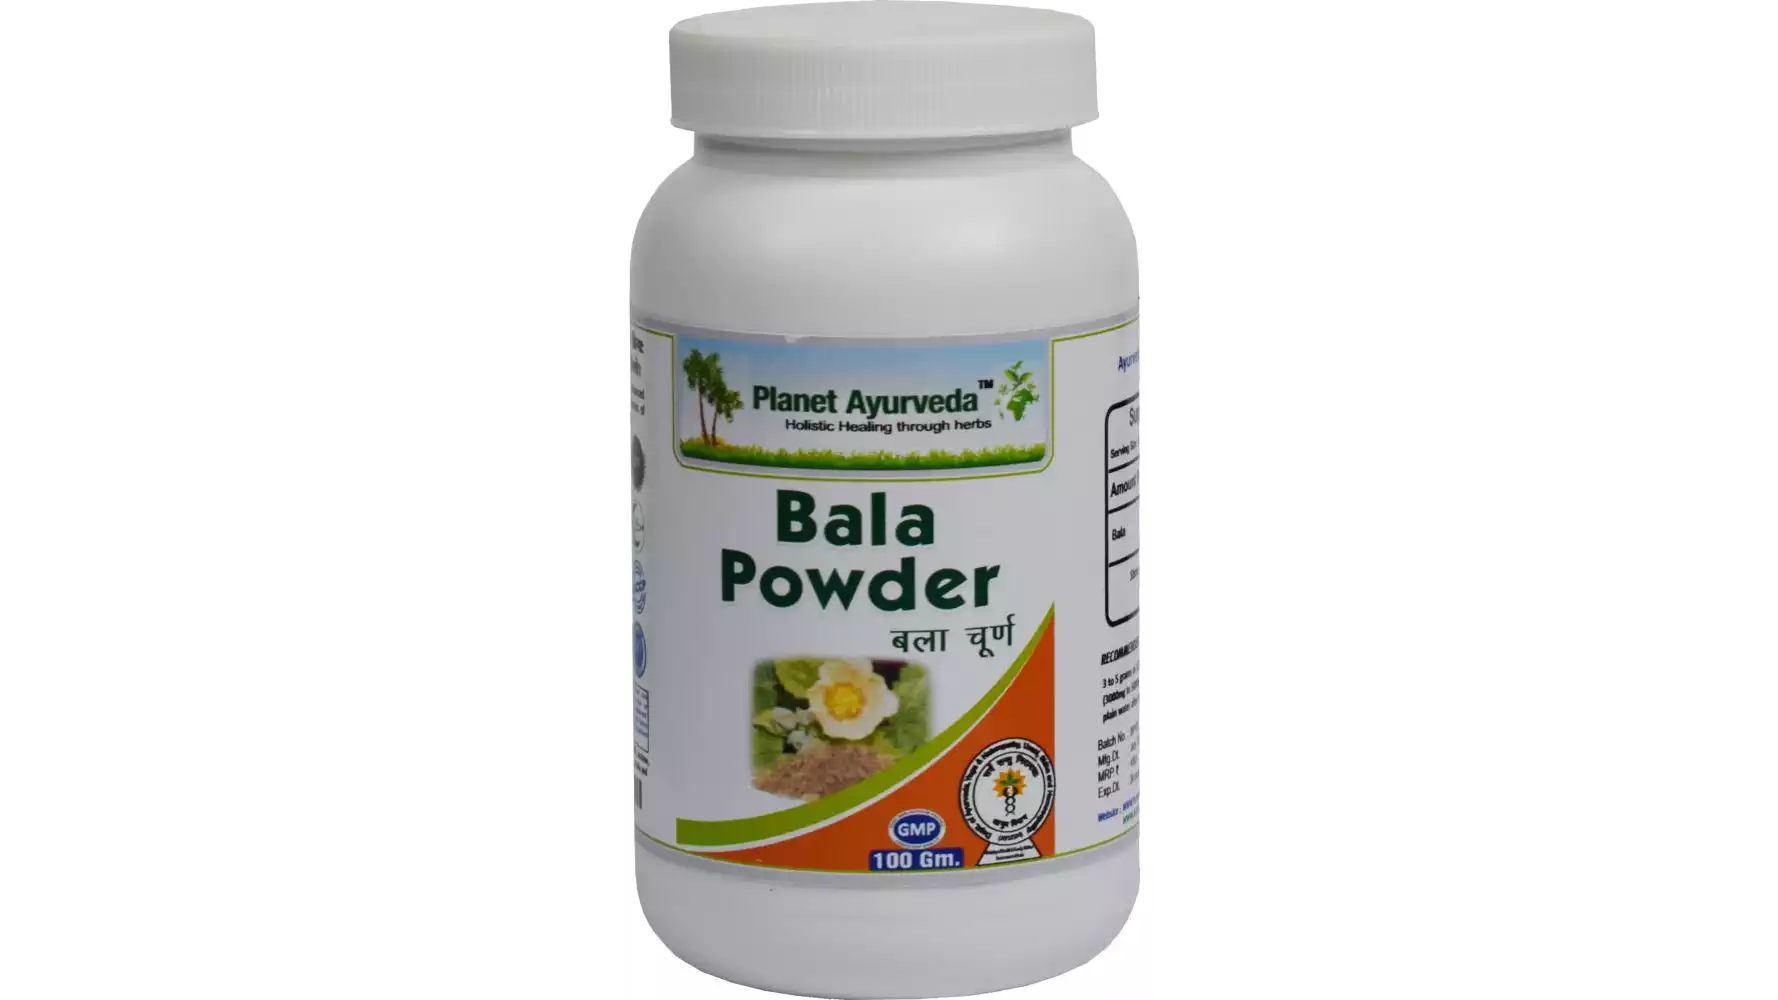 Planet Ayurveda Bala Powder (100g, Pack of 2)